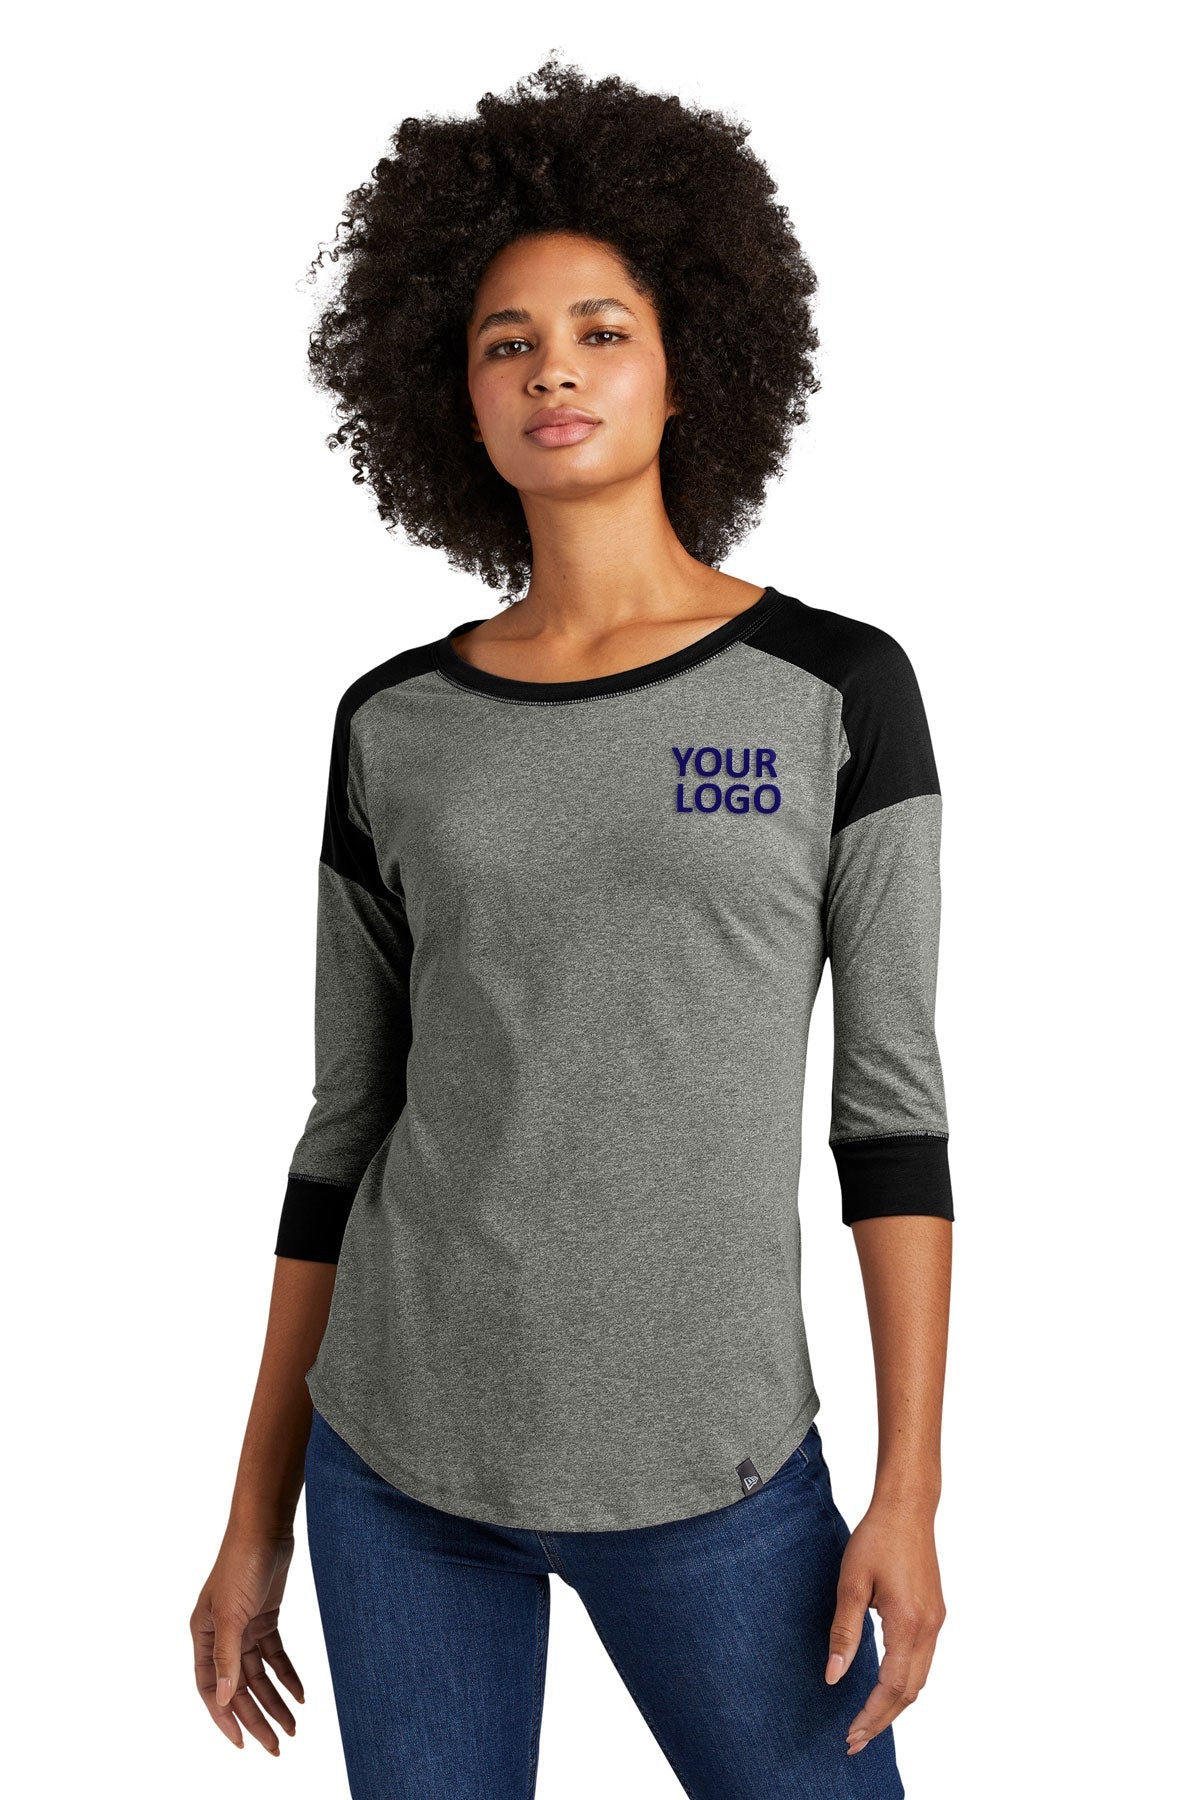 Buy Women's Printed Raglan T-Shirt - 3/4 Sleeves